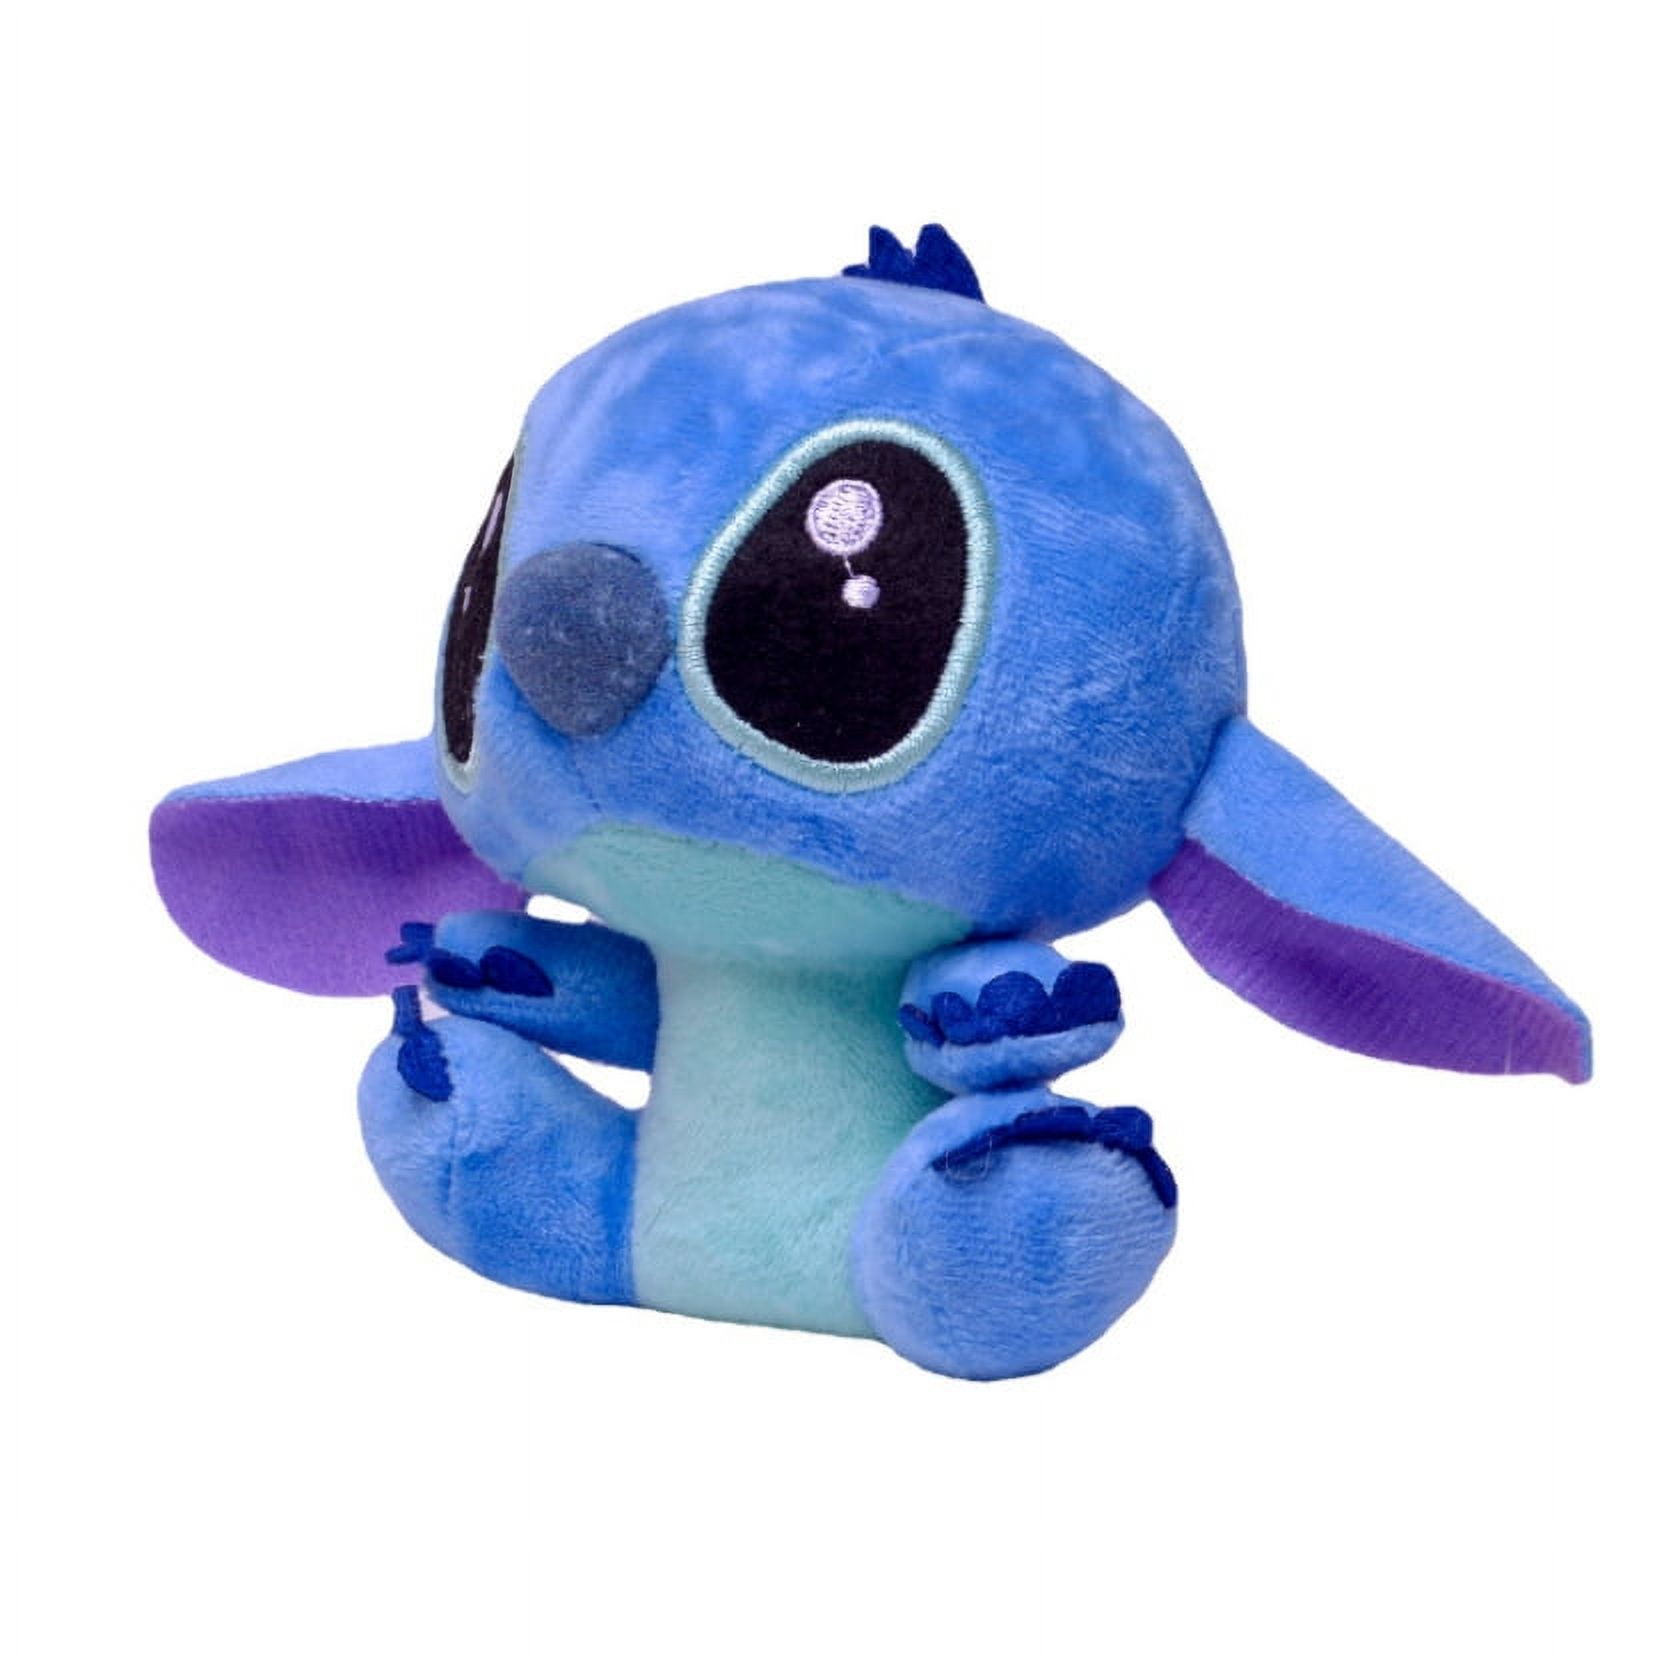  neoson Stitch Plush Stuffed Toys, Purple Stitch Figure Plushie  Dolls, Purple and Stitch Gifts, Soft and Cuddly, Plush Cuddle Pillow Buddy,  Stitch Gifts for Fans (2pcsStitch Plush) : Toys & Games